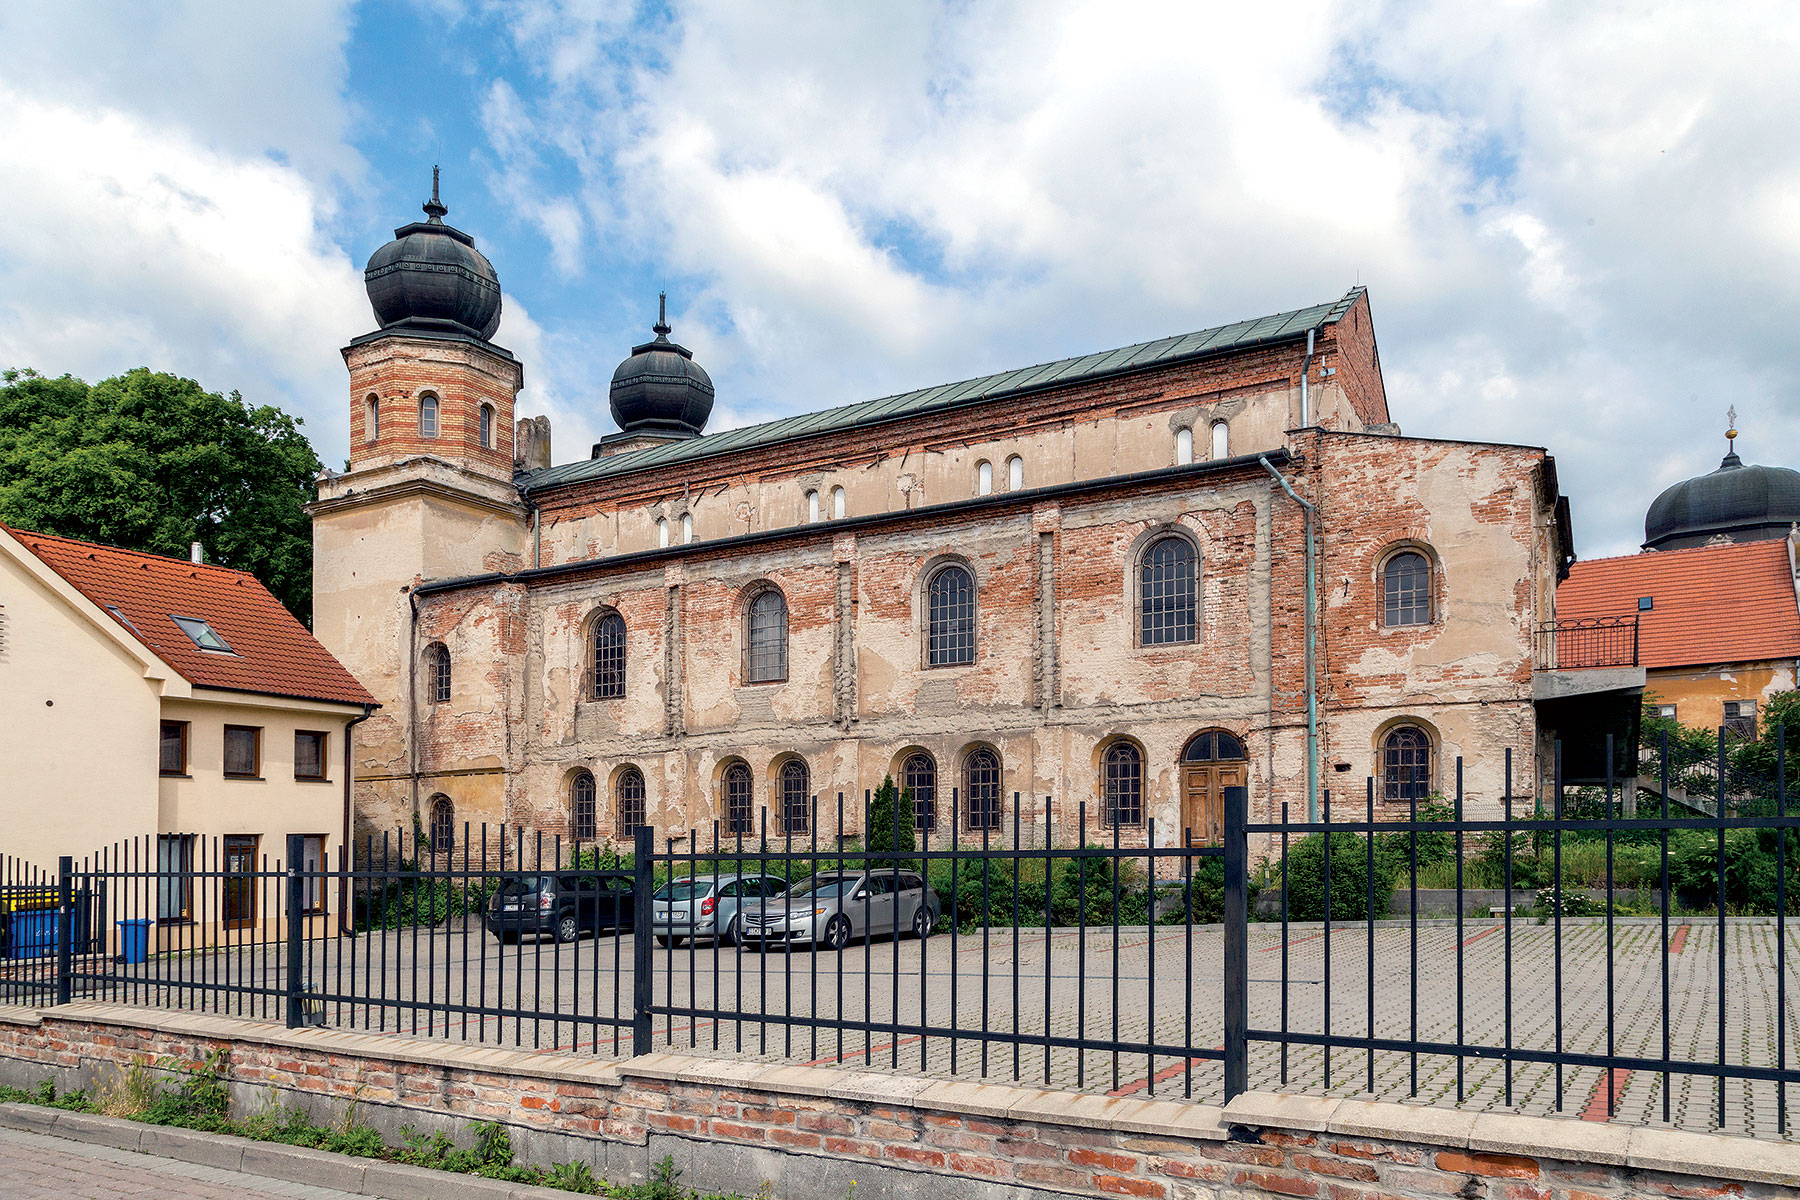 Súčasný stav synagógy v Trnave – hmotovo-priestorové riešenie, ako aj fasády si zachovali intaktný historizujúci výraz pochádzajúci z obdobia vzniku.